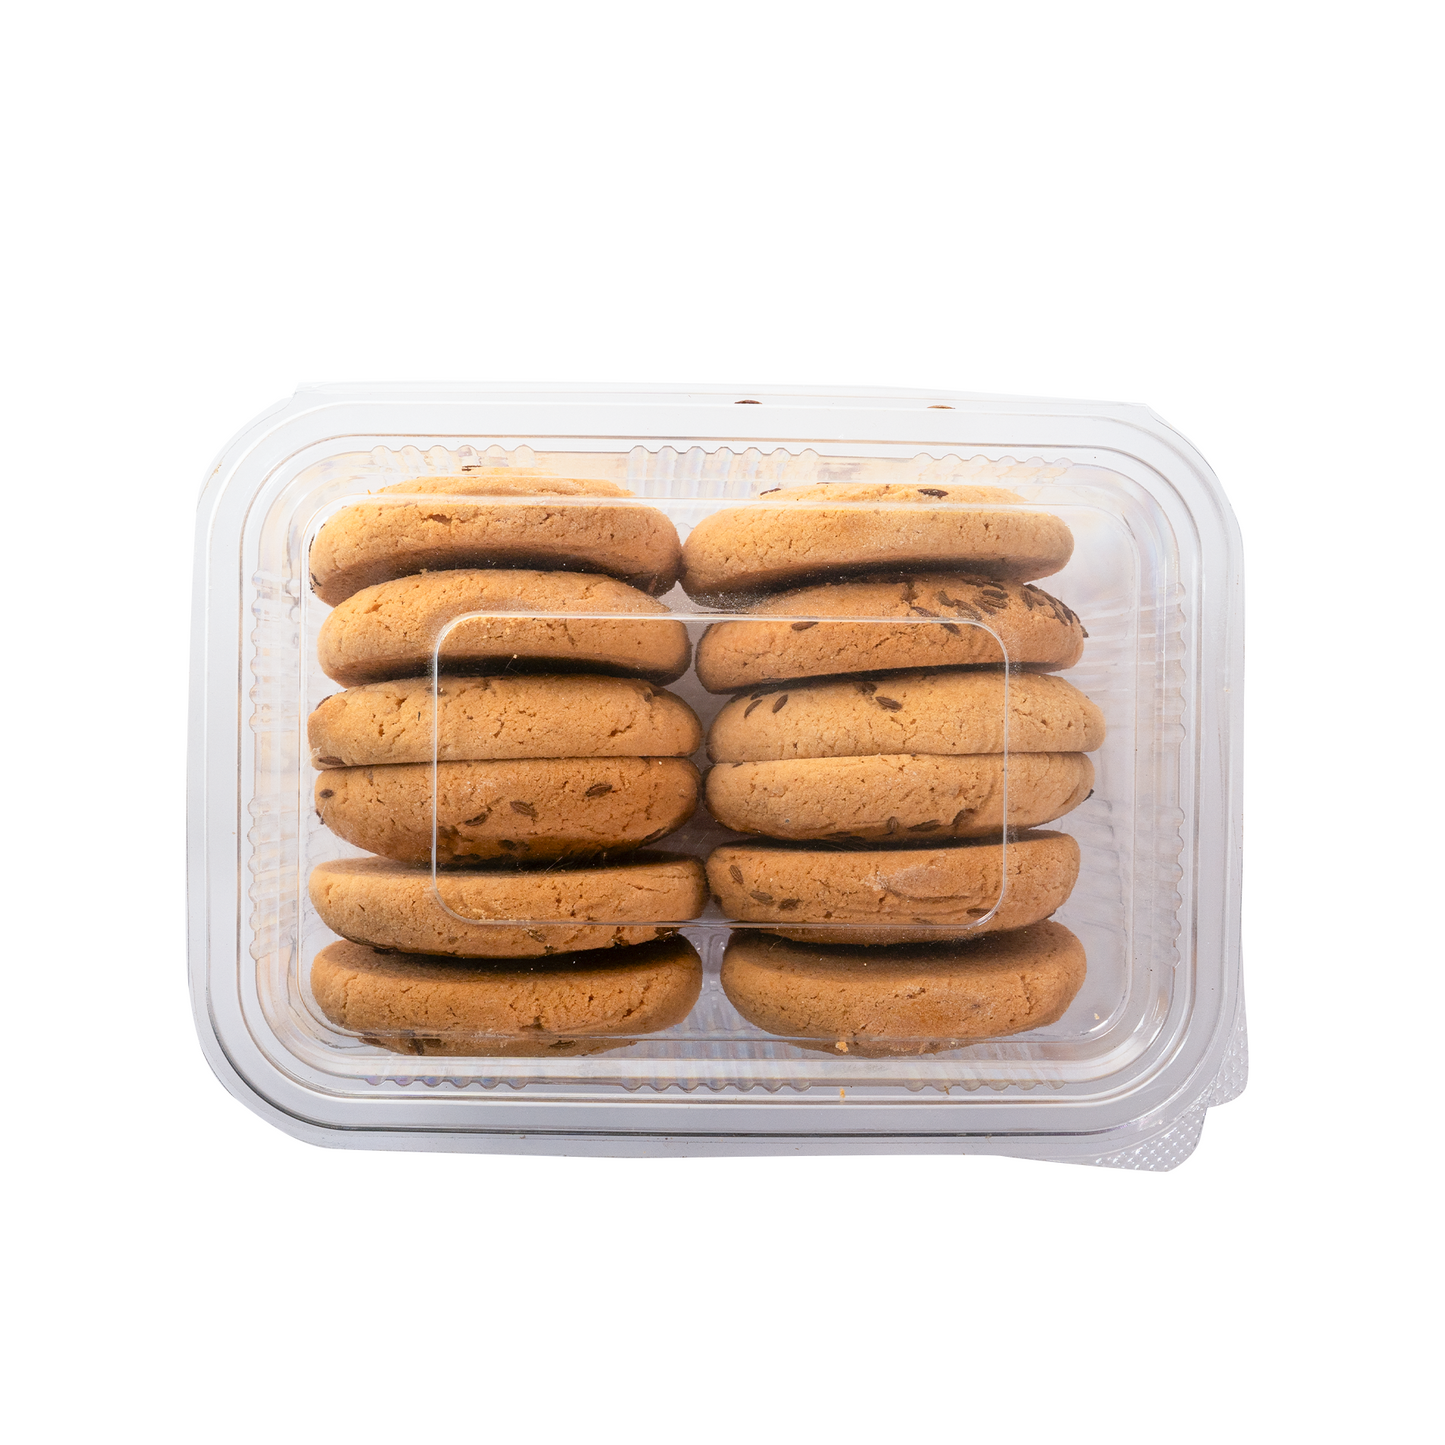 Handmade Jeera Biscuits (Sugar Free)  - High Fiber, Tasty Snack Healthy (350 g Pack of 1).